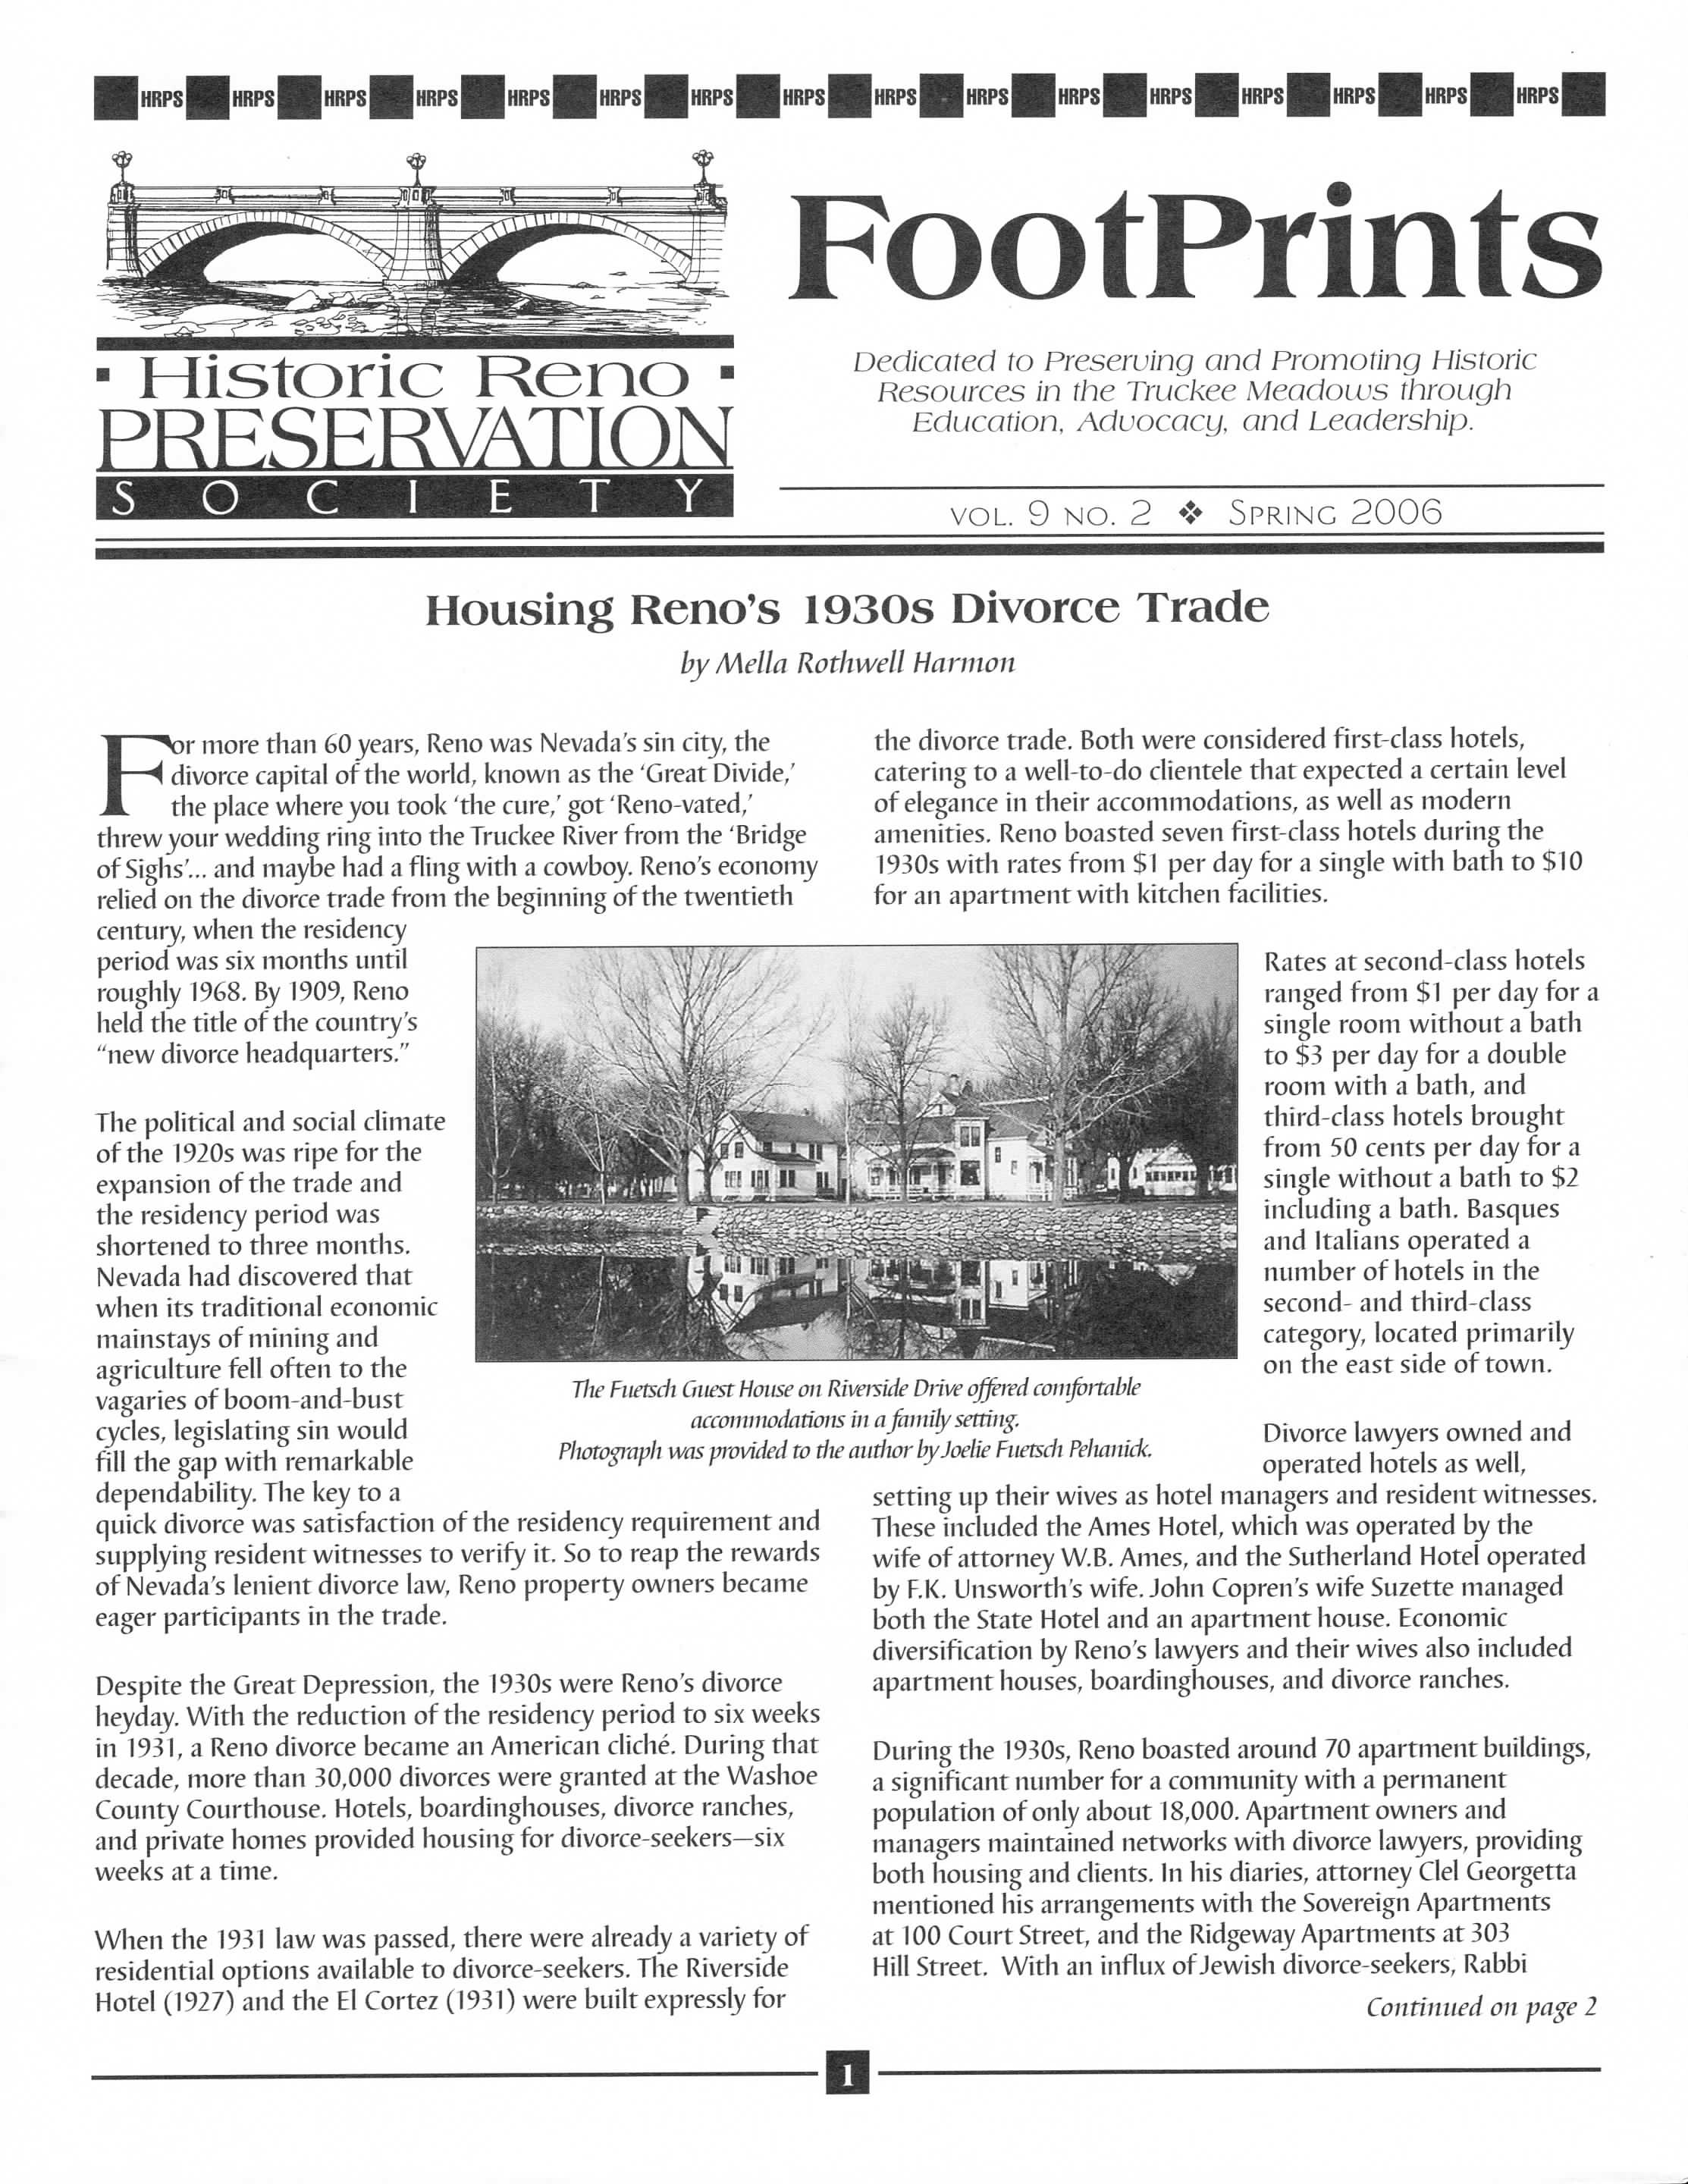 FootPrints Volume 9, Number 2, Spring 2006